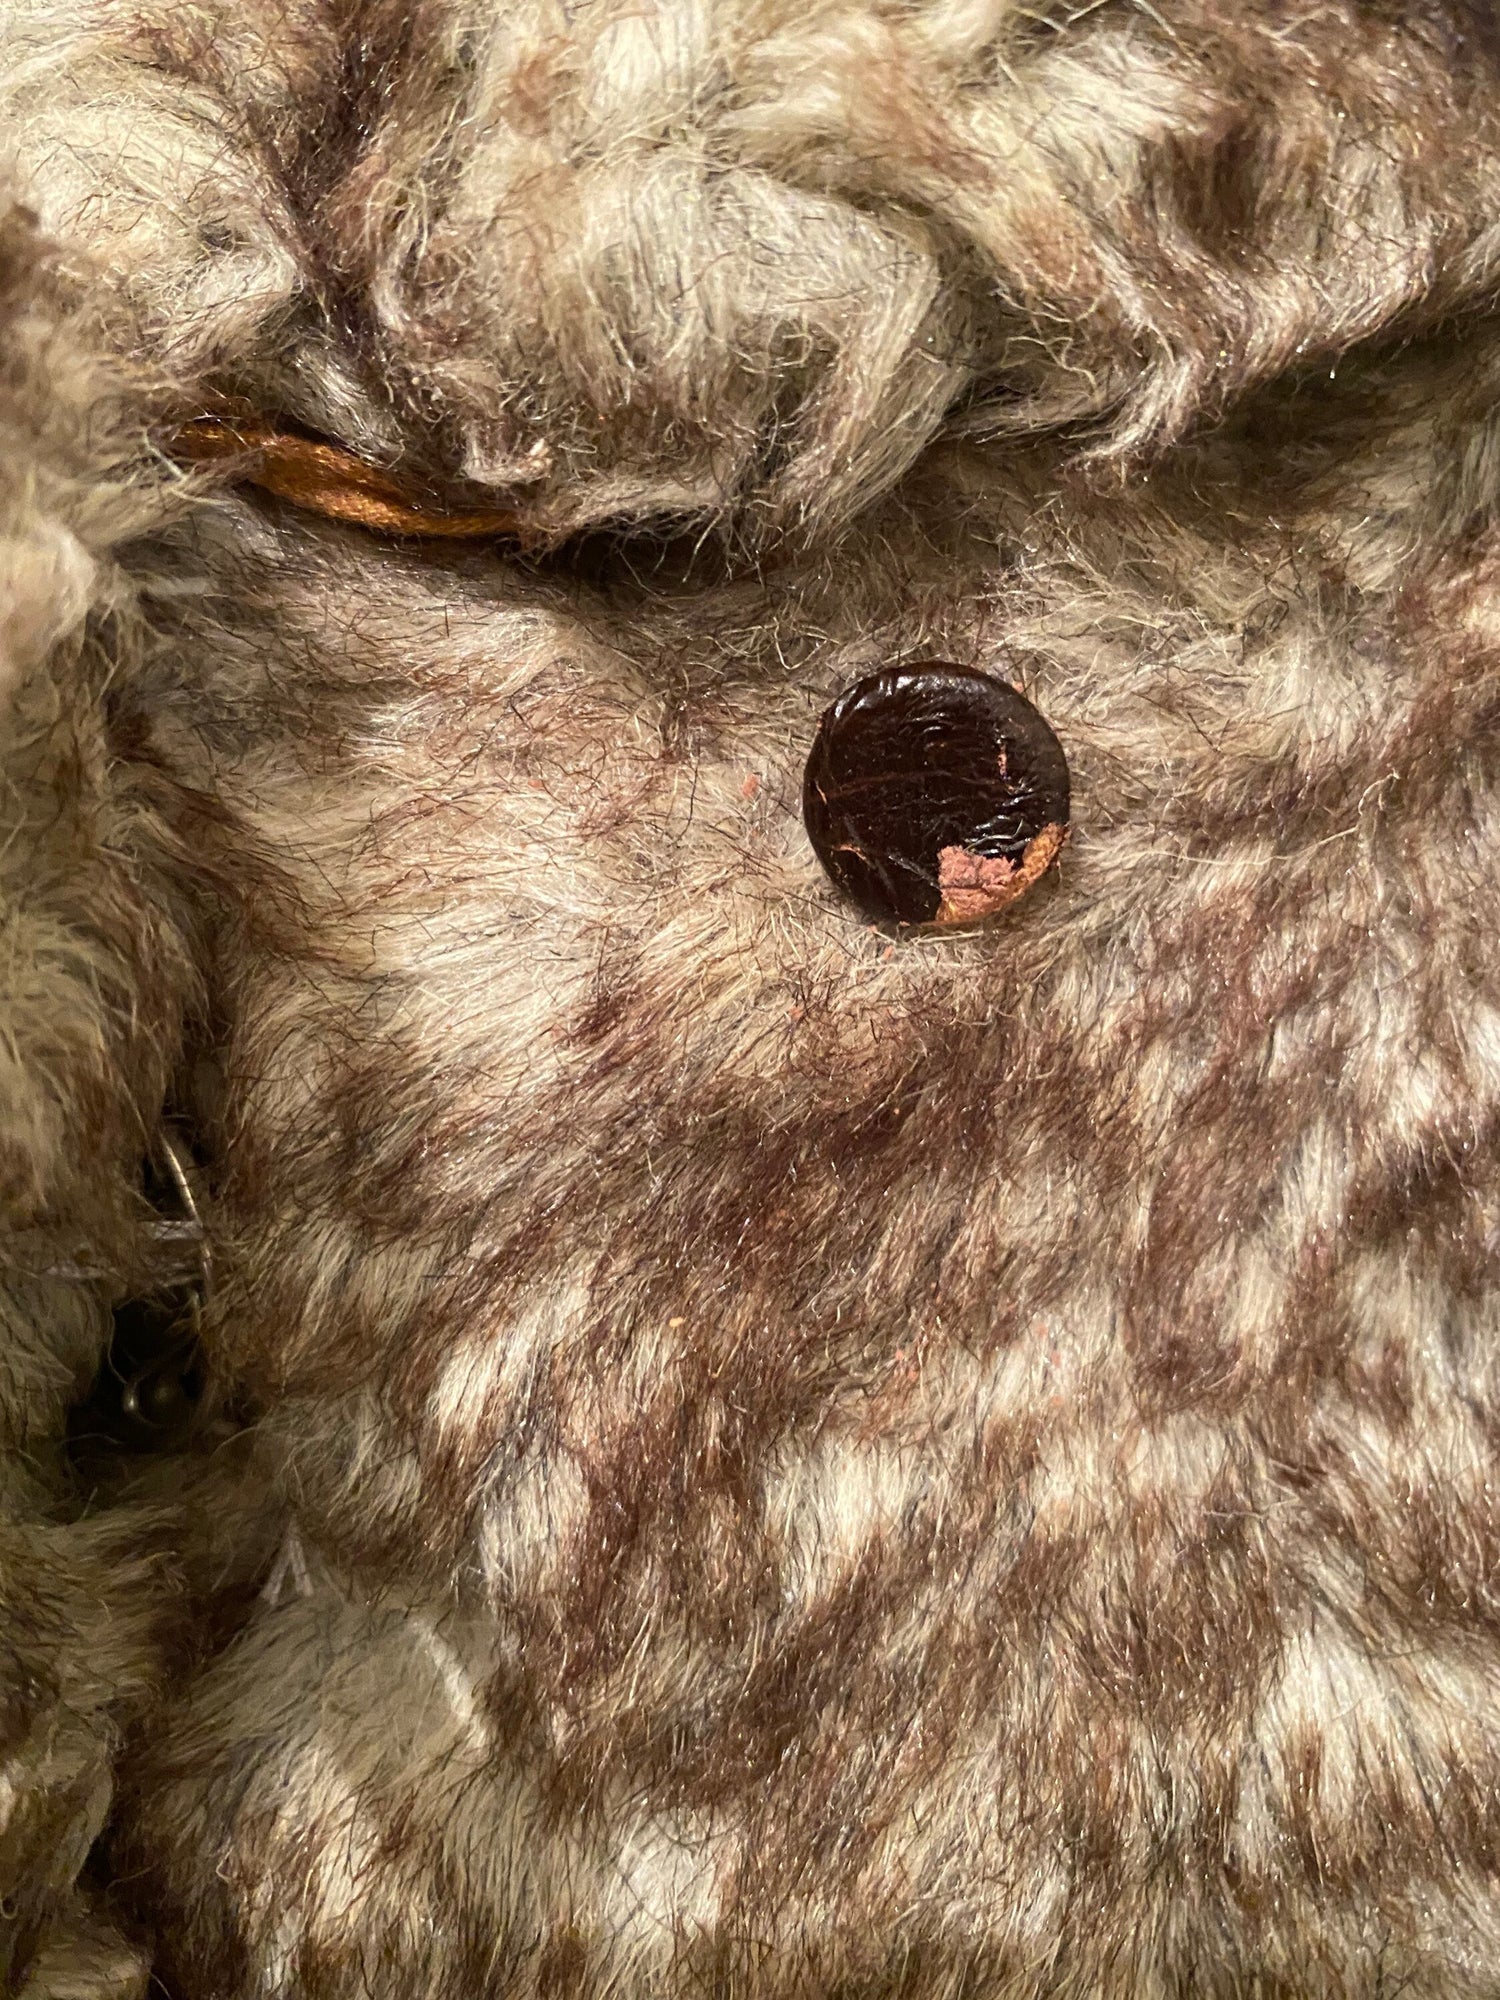 Brown faux fur vintage jacket